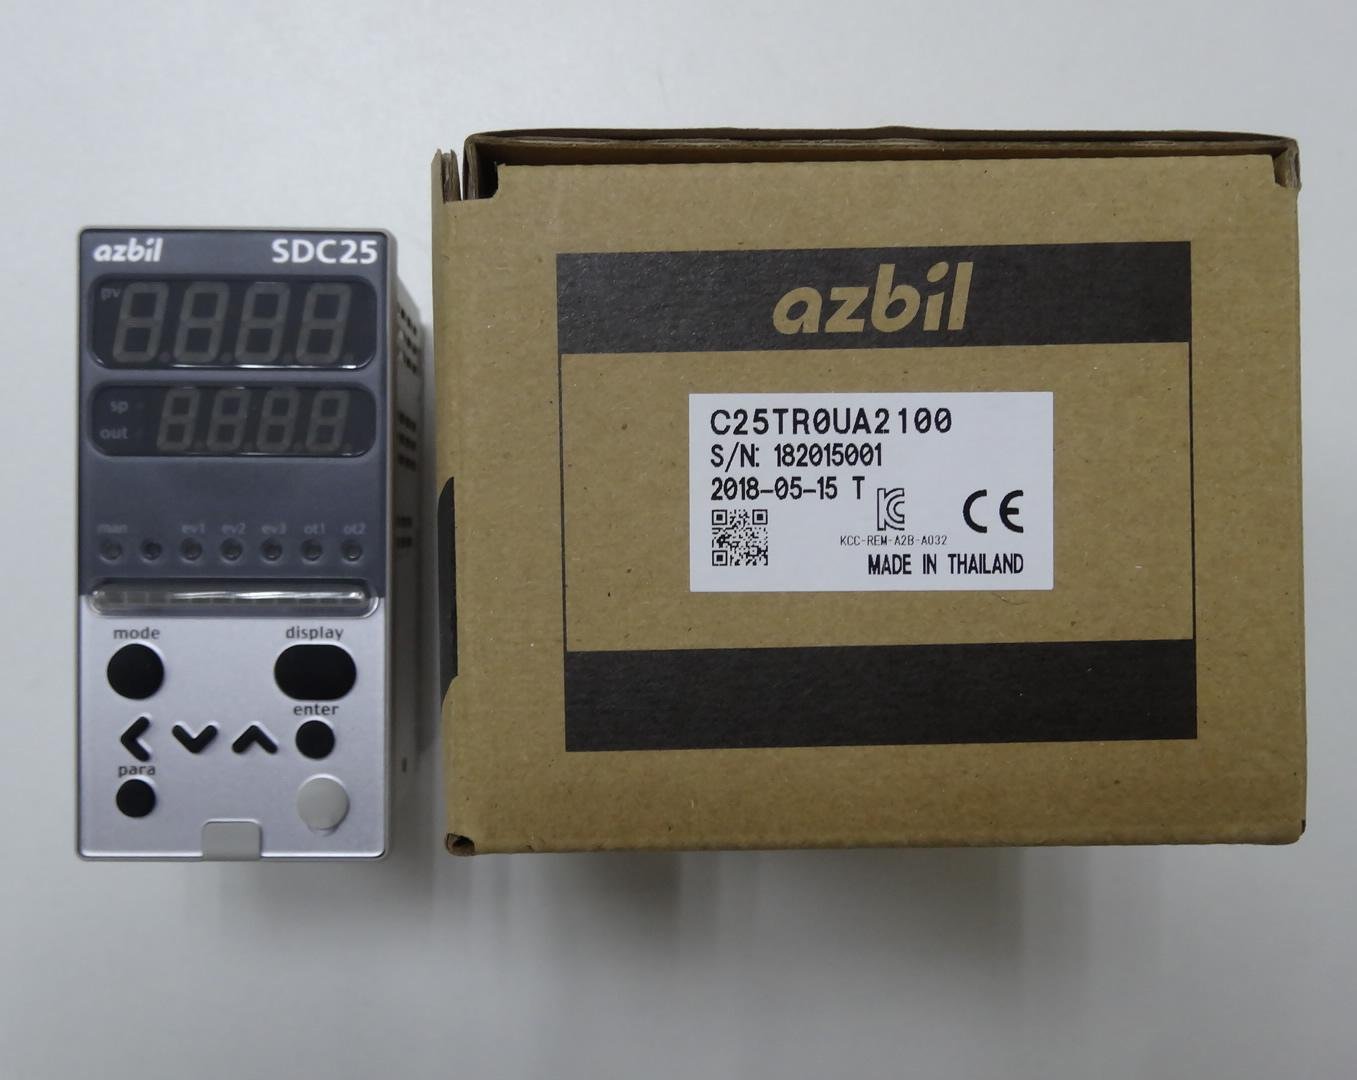 山武溫控表 azbil C25TC0UA1200 數字調節器 SDC25系列       5